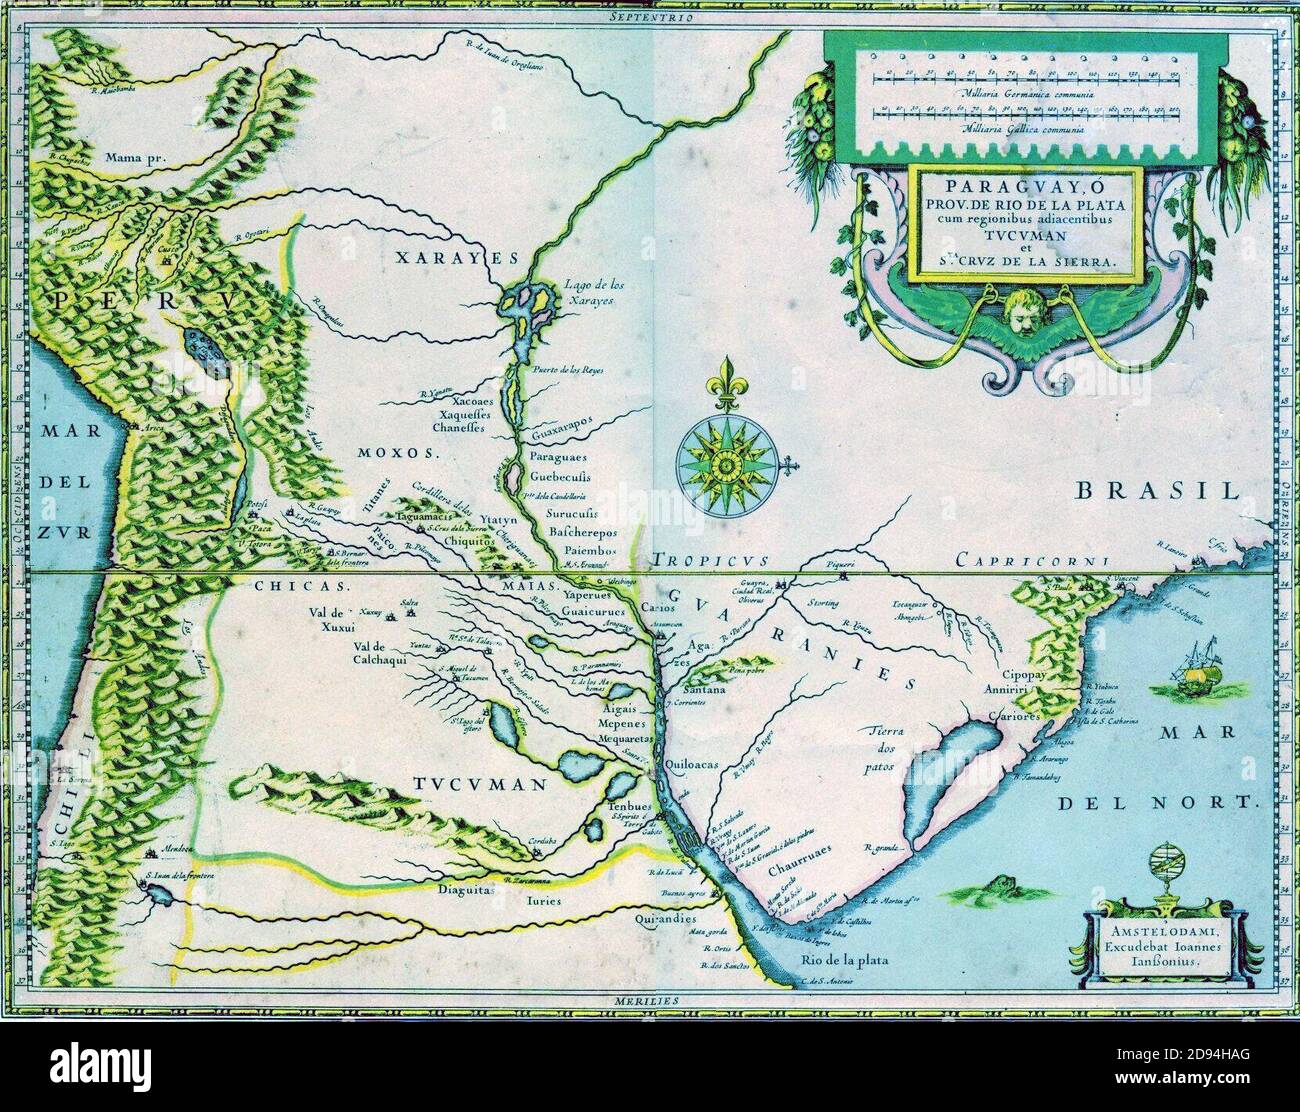 Xvii secolo mappa del Río de la Plata basin Foto Stock